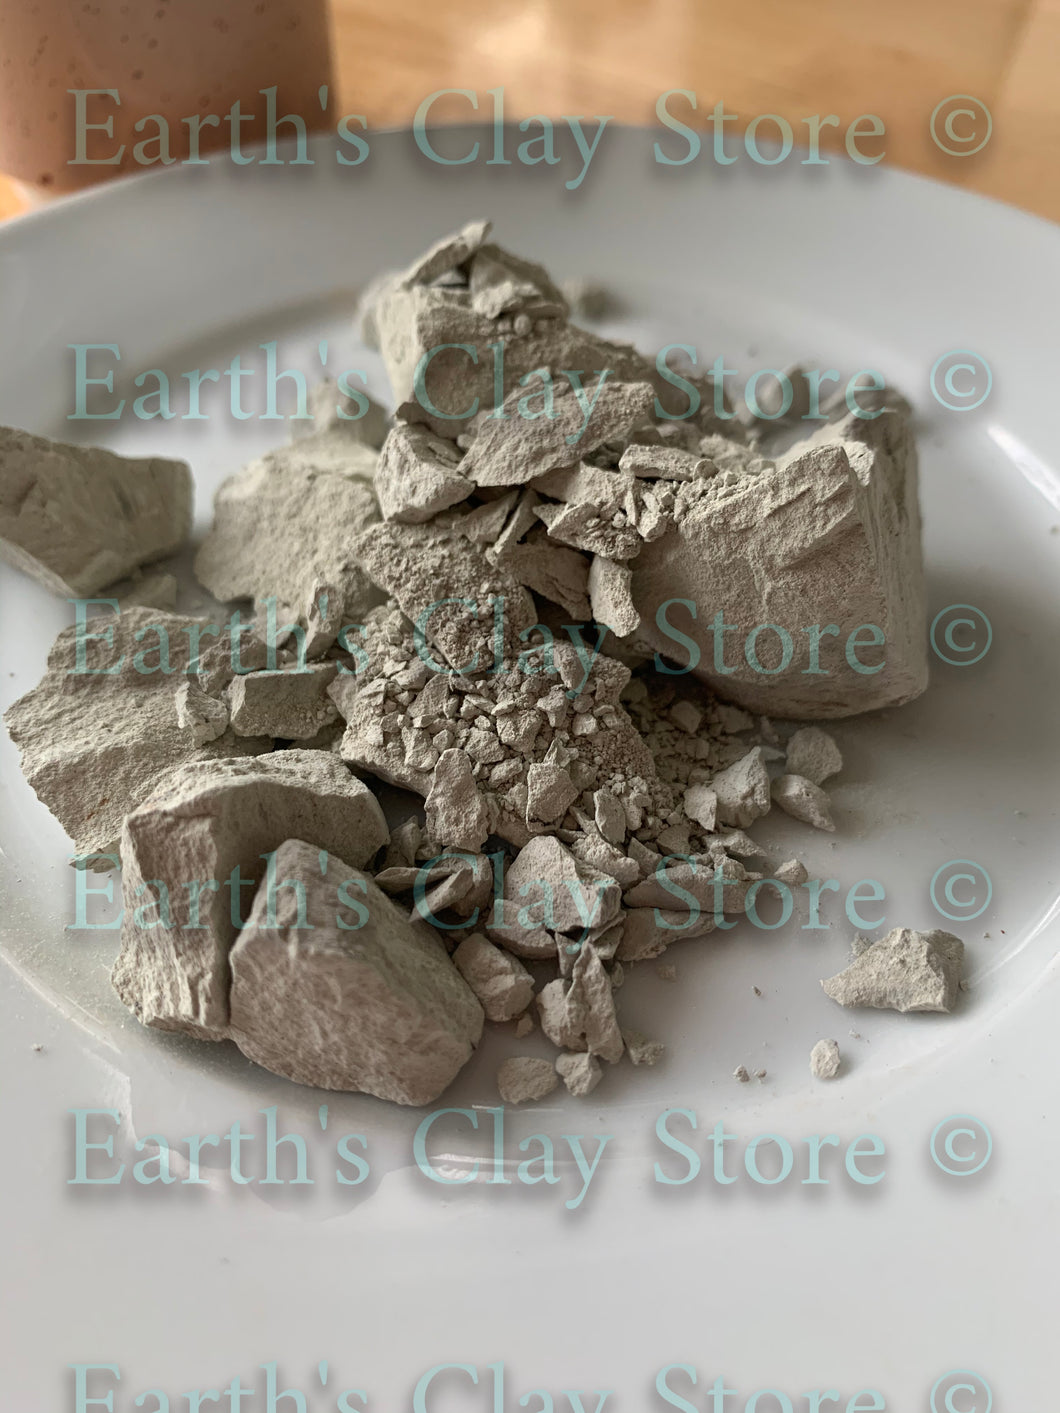  BENTONITE Edible Clay Chunks Natural for Eating, 8 oz